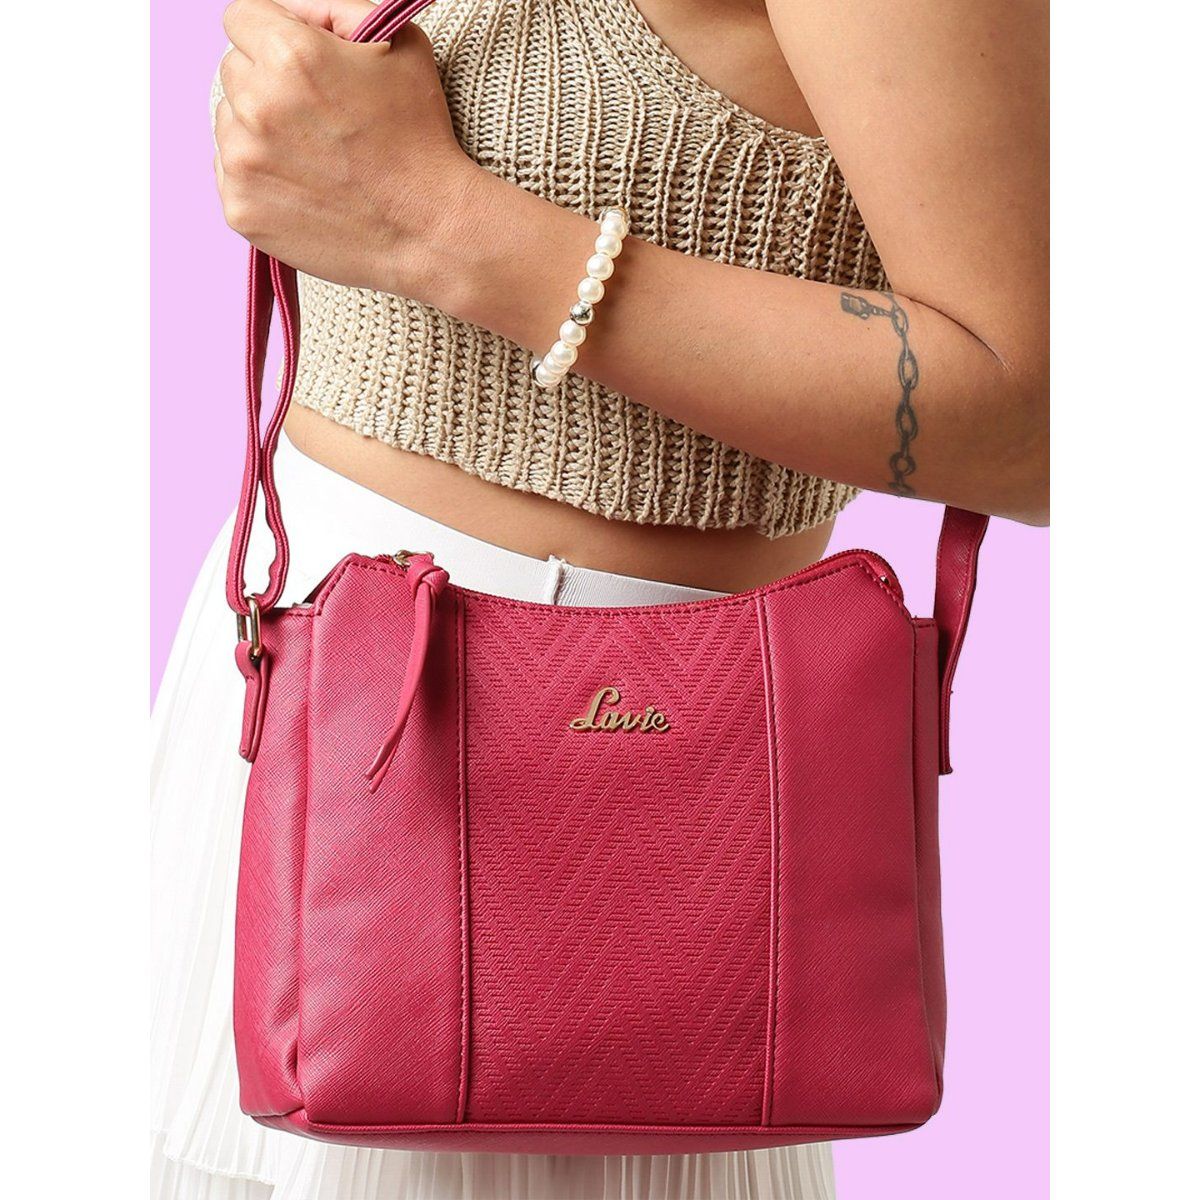 Buy Lavie Women's Diose 2 Compartment Medium Satchel Bag B Red Ladies Purse  Handbag at Amazon.in